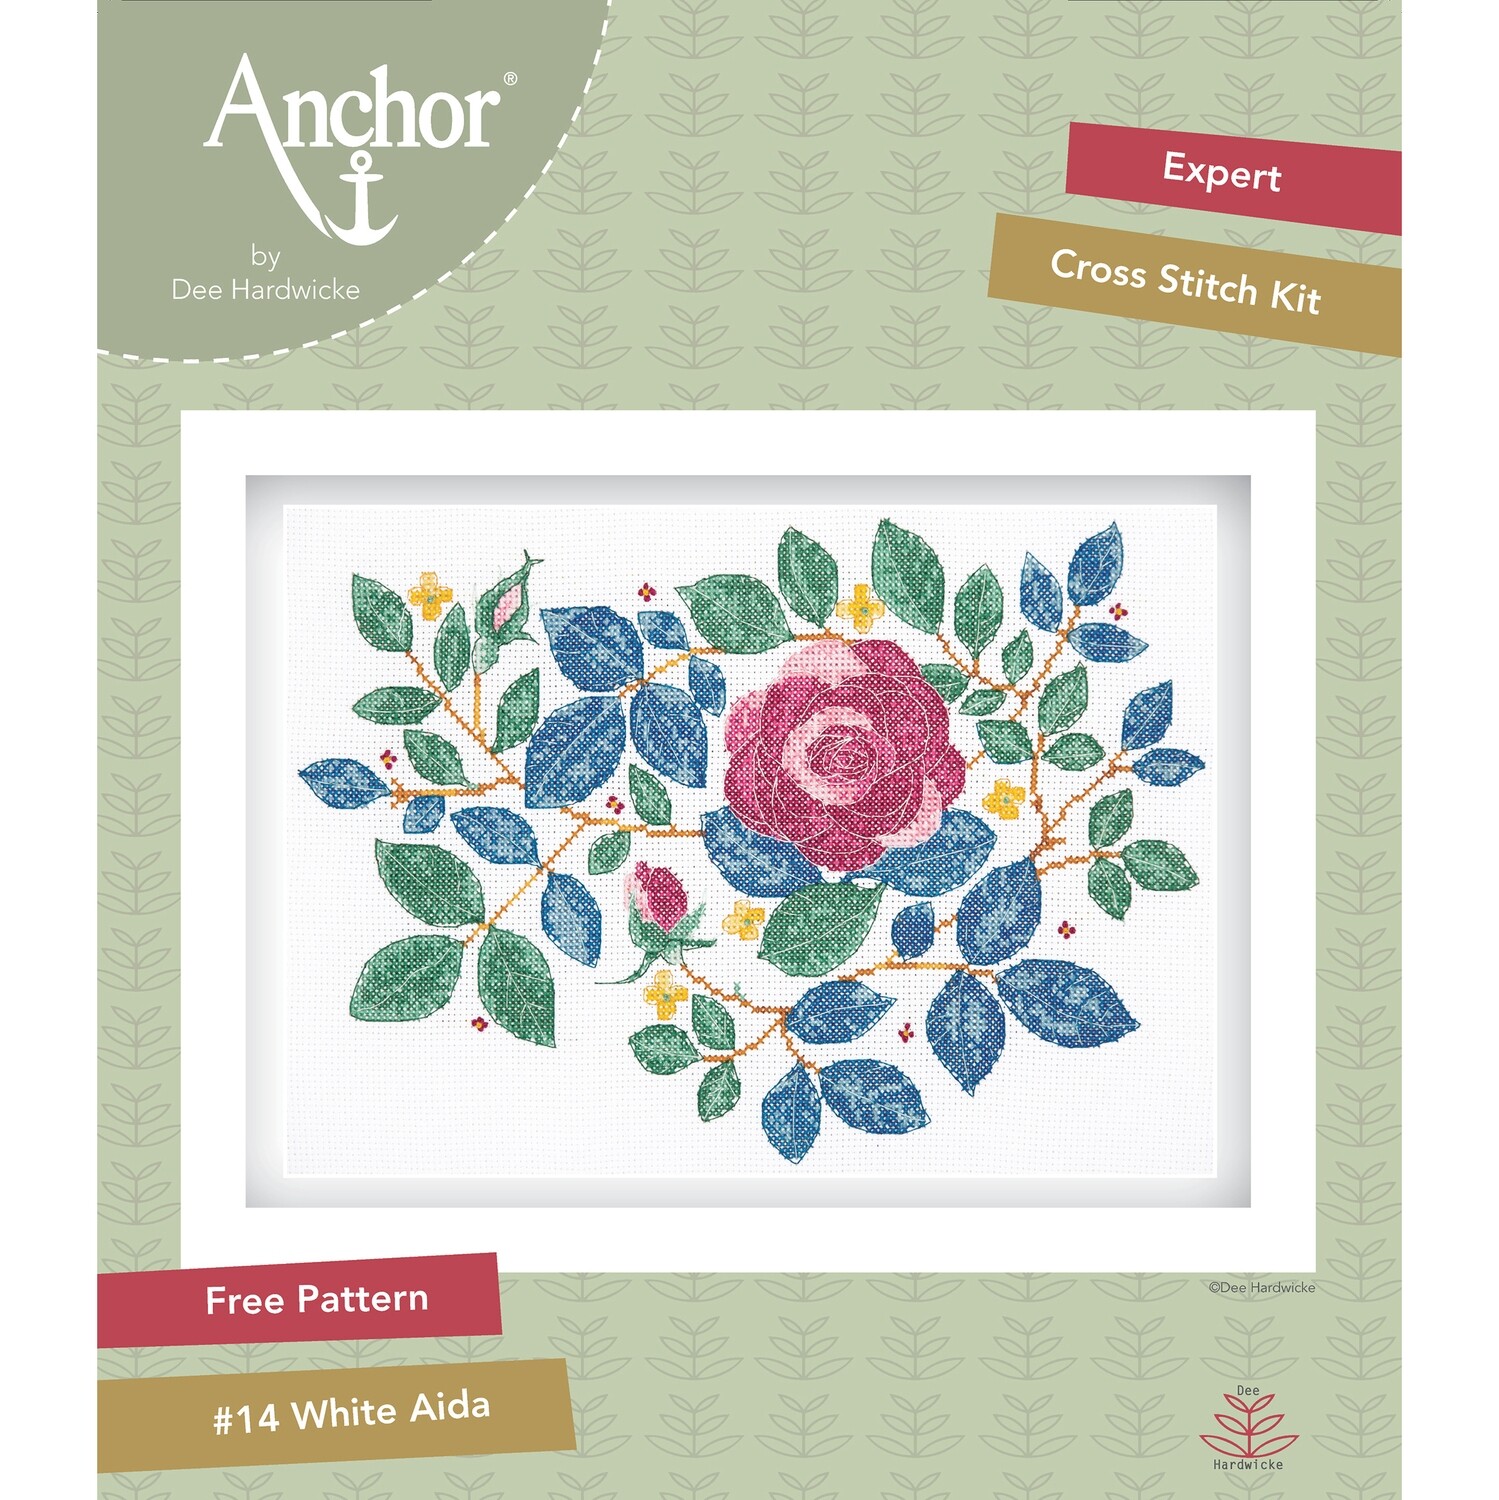 Anchor by Dee Hardwicke - Rose Garden Cross Stitch Kit